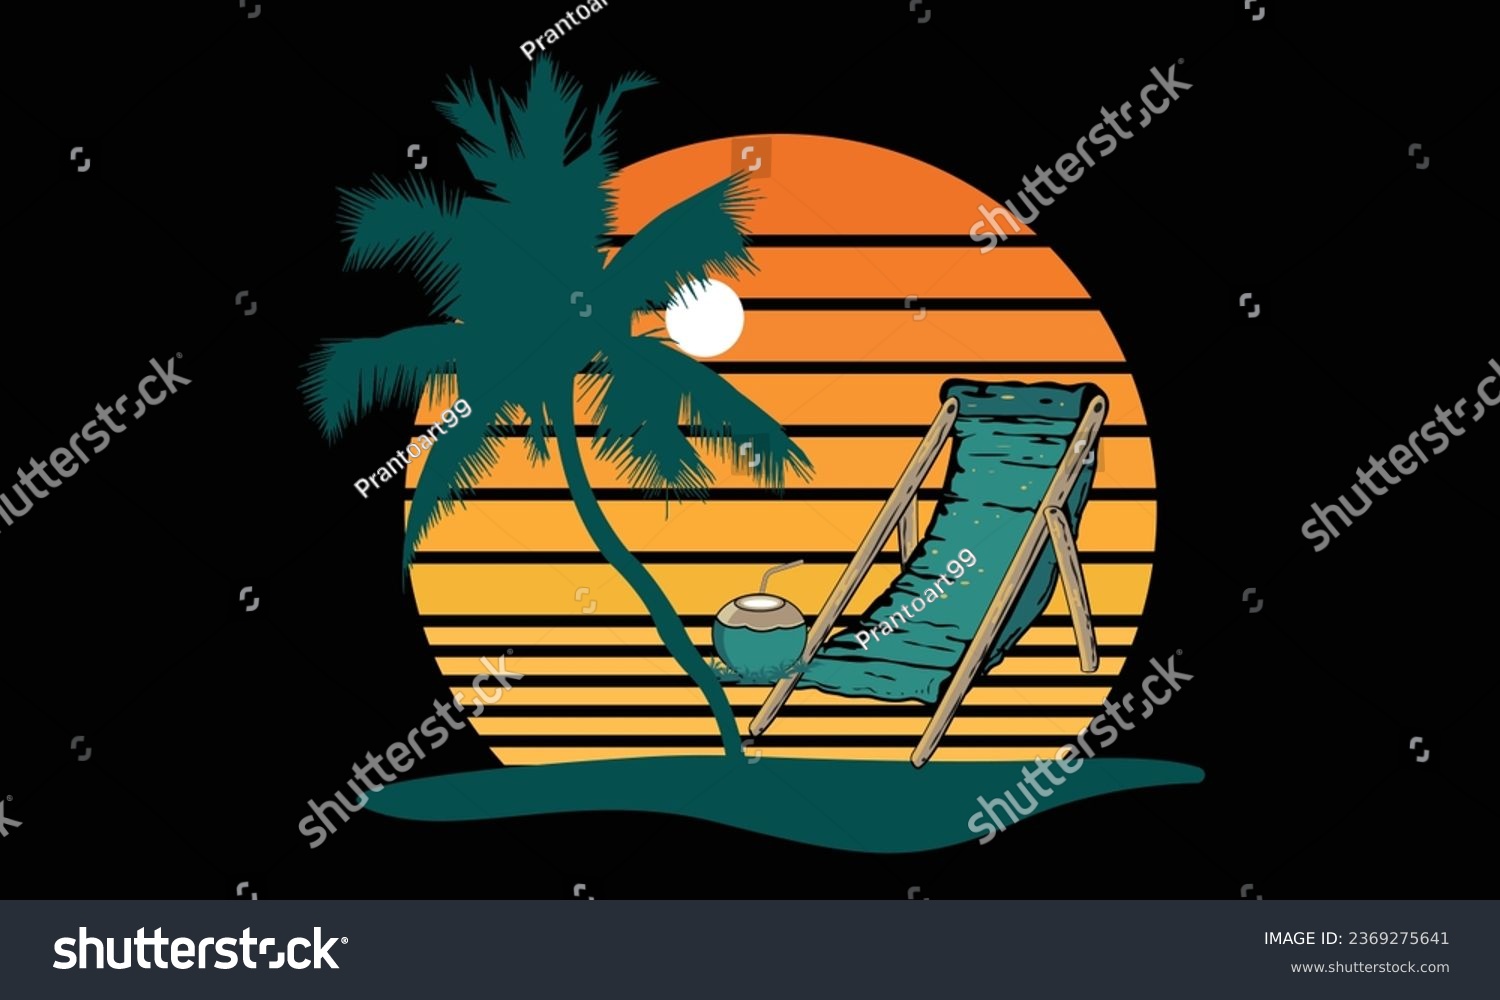 SVG of Sunset Beach Chair California Surfing Design,
California Surfing Boats Colorful Beach Illustration Design, Hello, Summer California Beach Vector T-shirt Design. svg